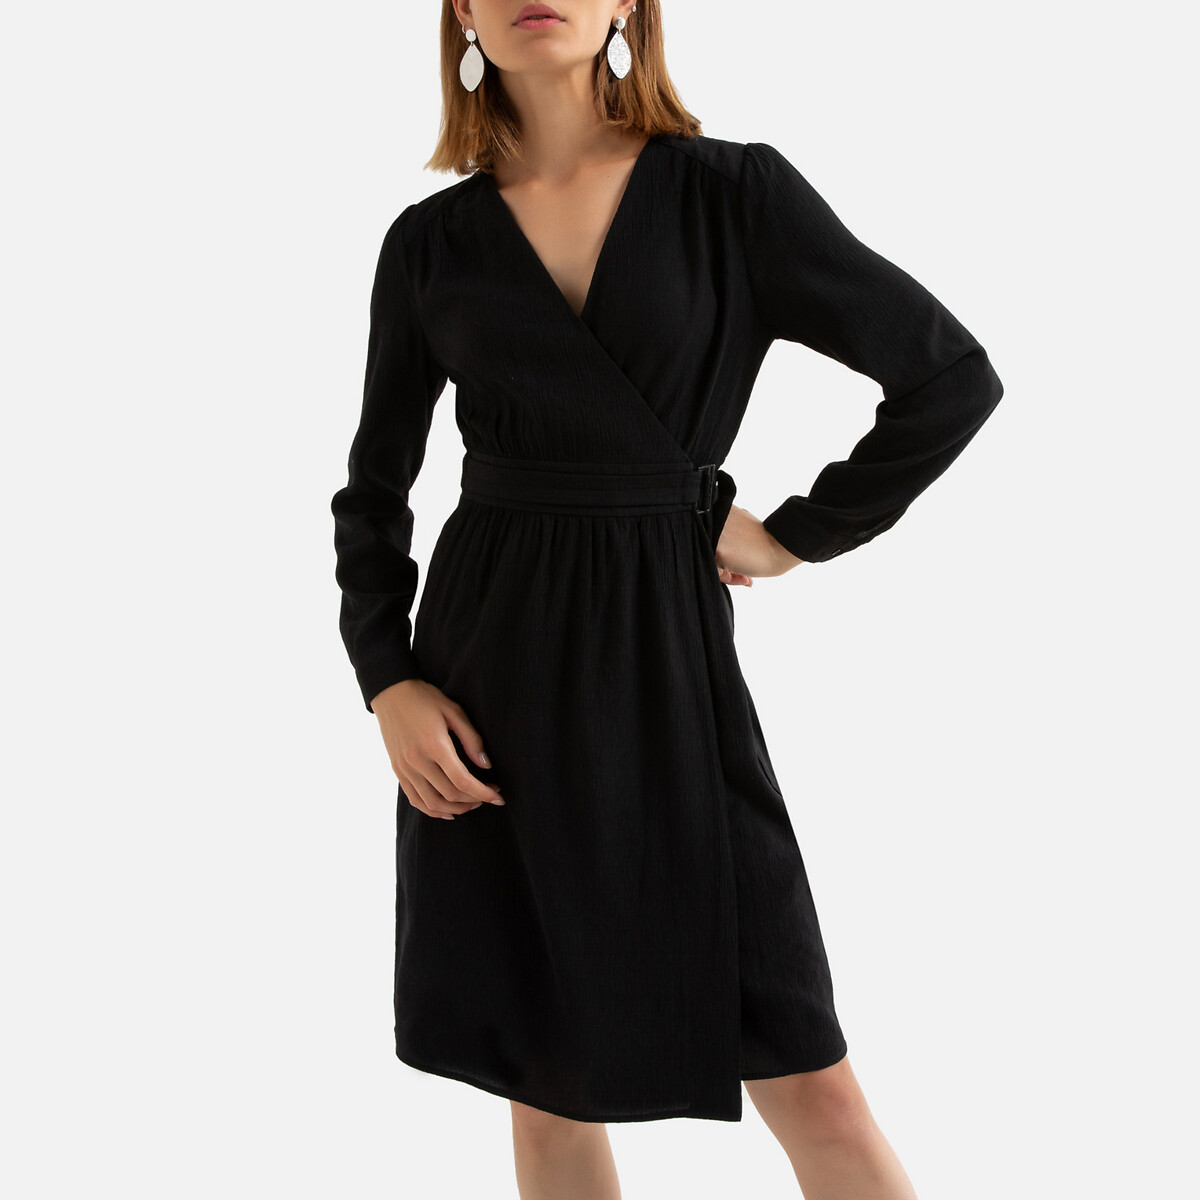 Платье La Redoute С запахом короткое длинные рукава 0(XS) черный, размер 0(XS) С запахом короткое длинные рукава 0(XS) черный - фото 3